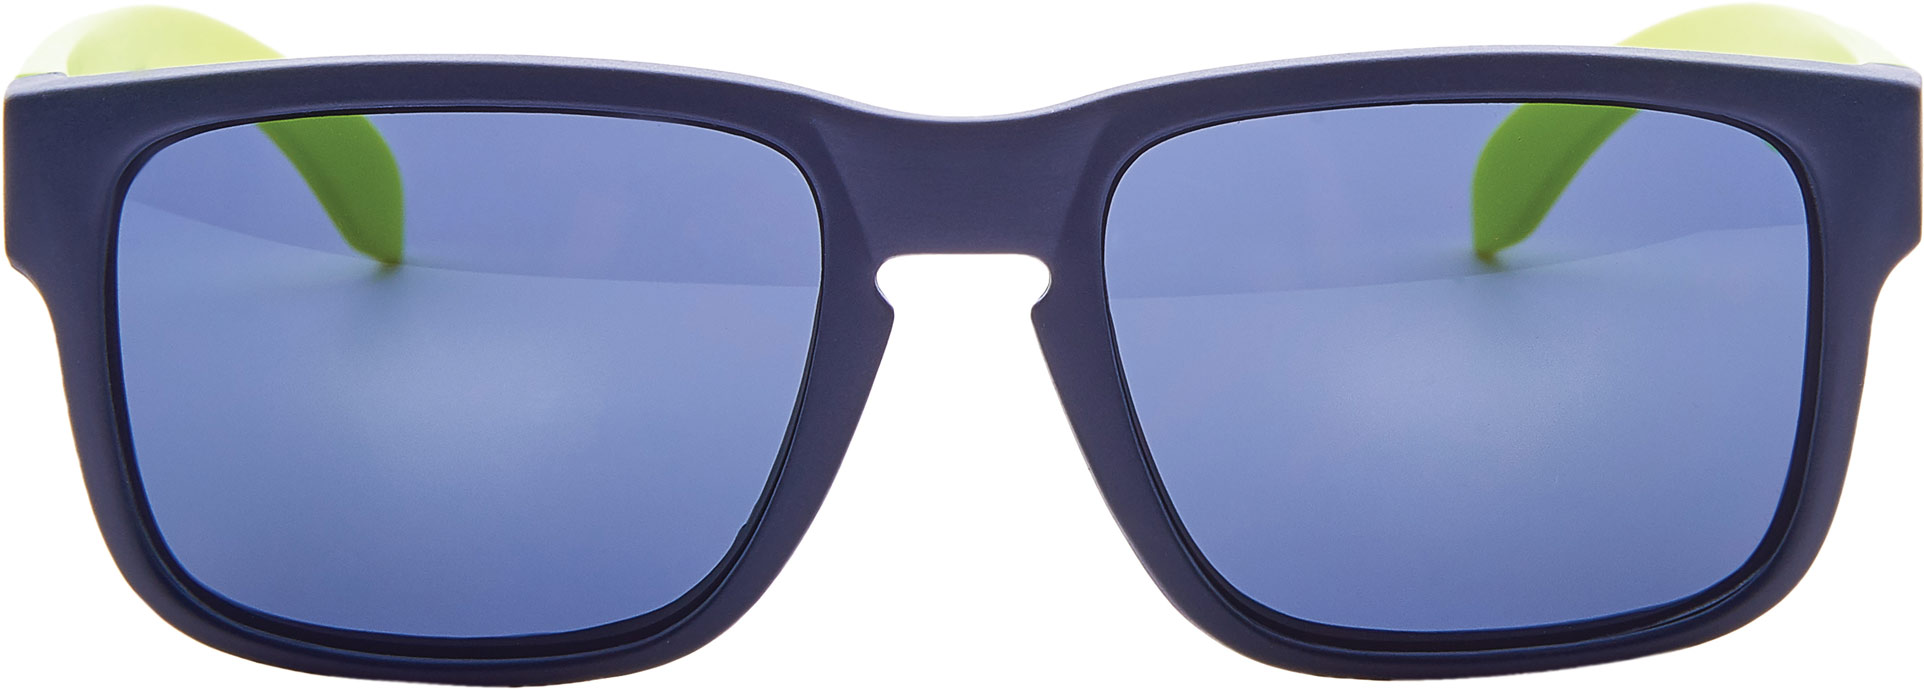 Men’s polycarbonate sunglasses